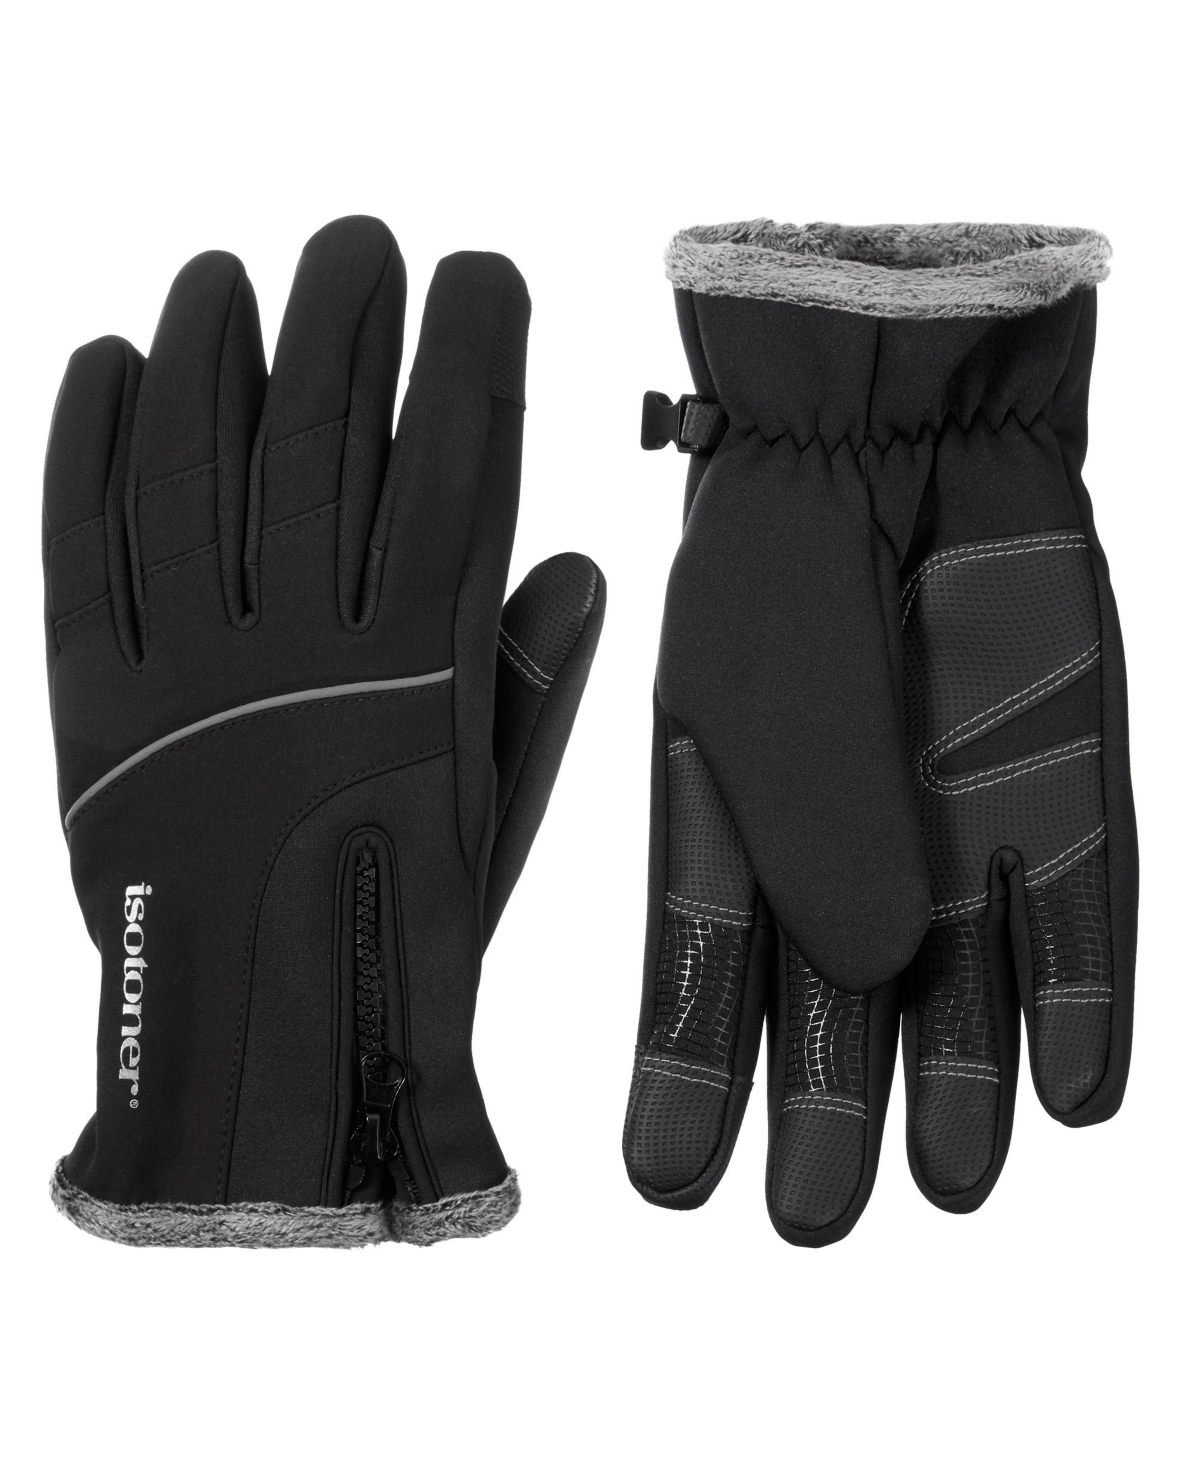 Men's Water Repellent Neoprene Sport Gloves with Zipper - Black